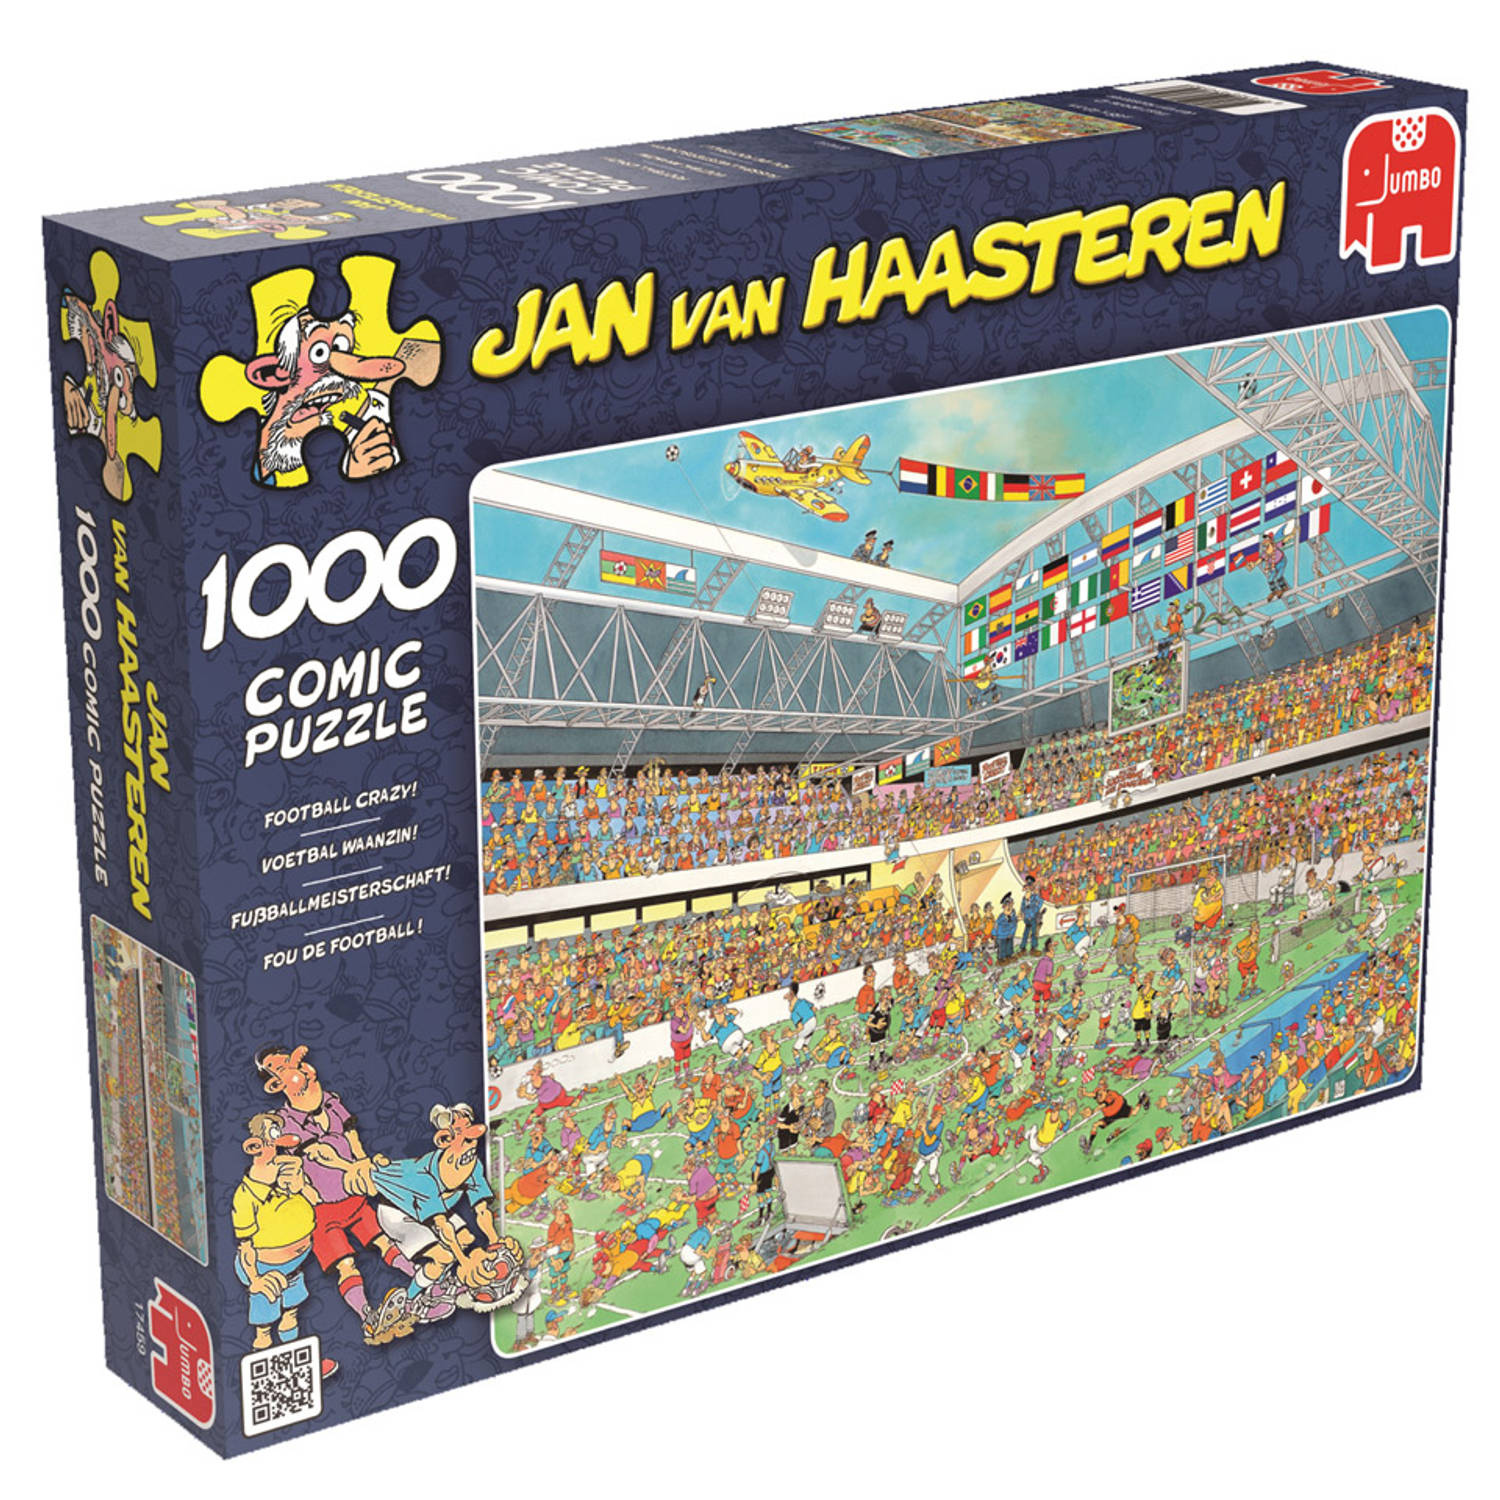 Wiens Oxideren Een goede vriend Jan van Haasteren puzzel voetbal waanzin - 1000 stukjes | Blokker